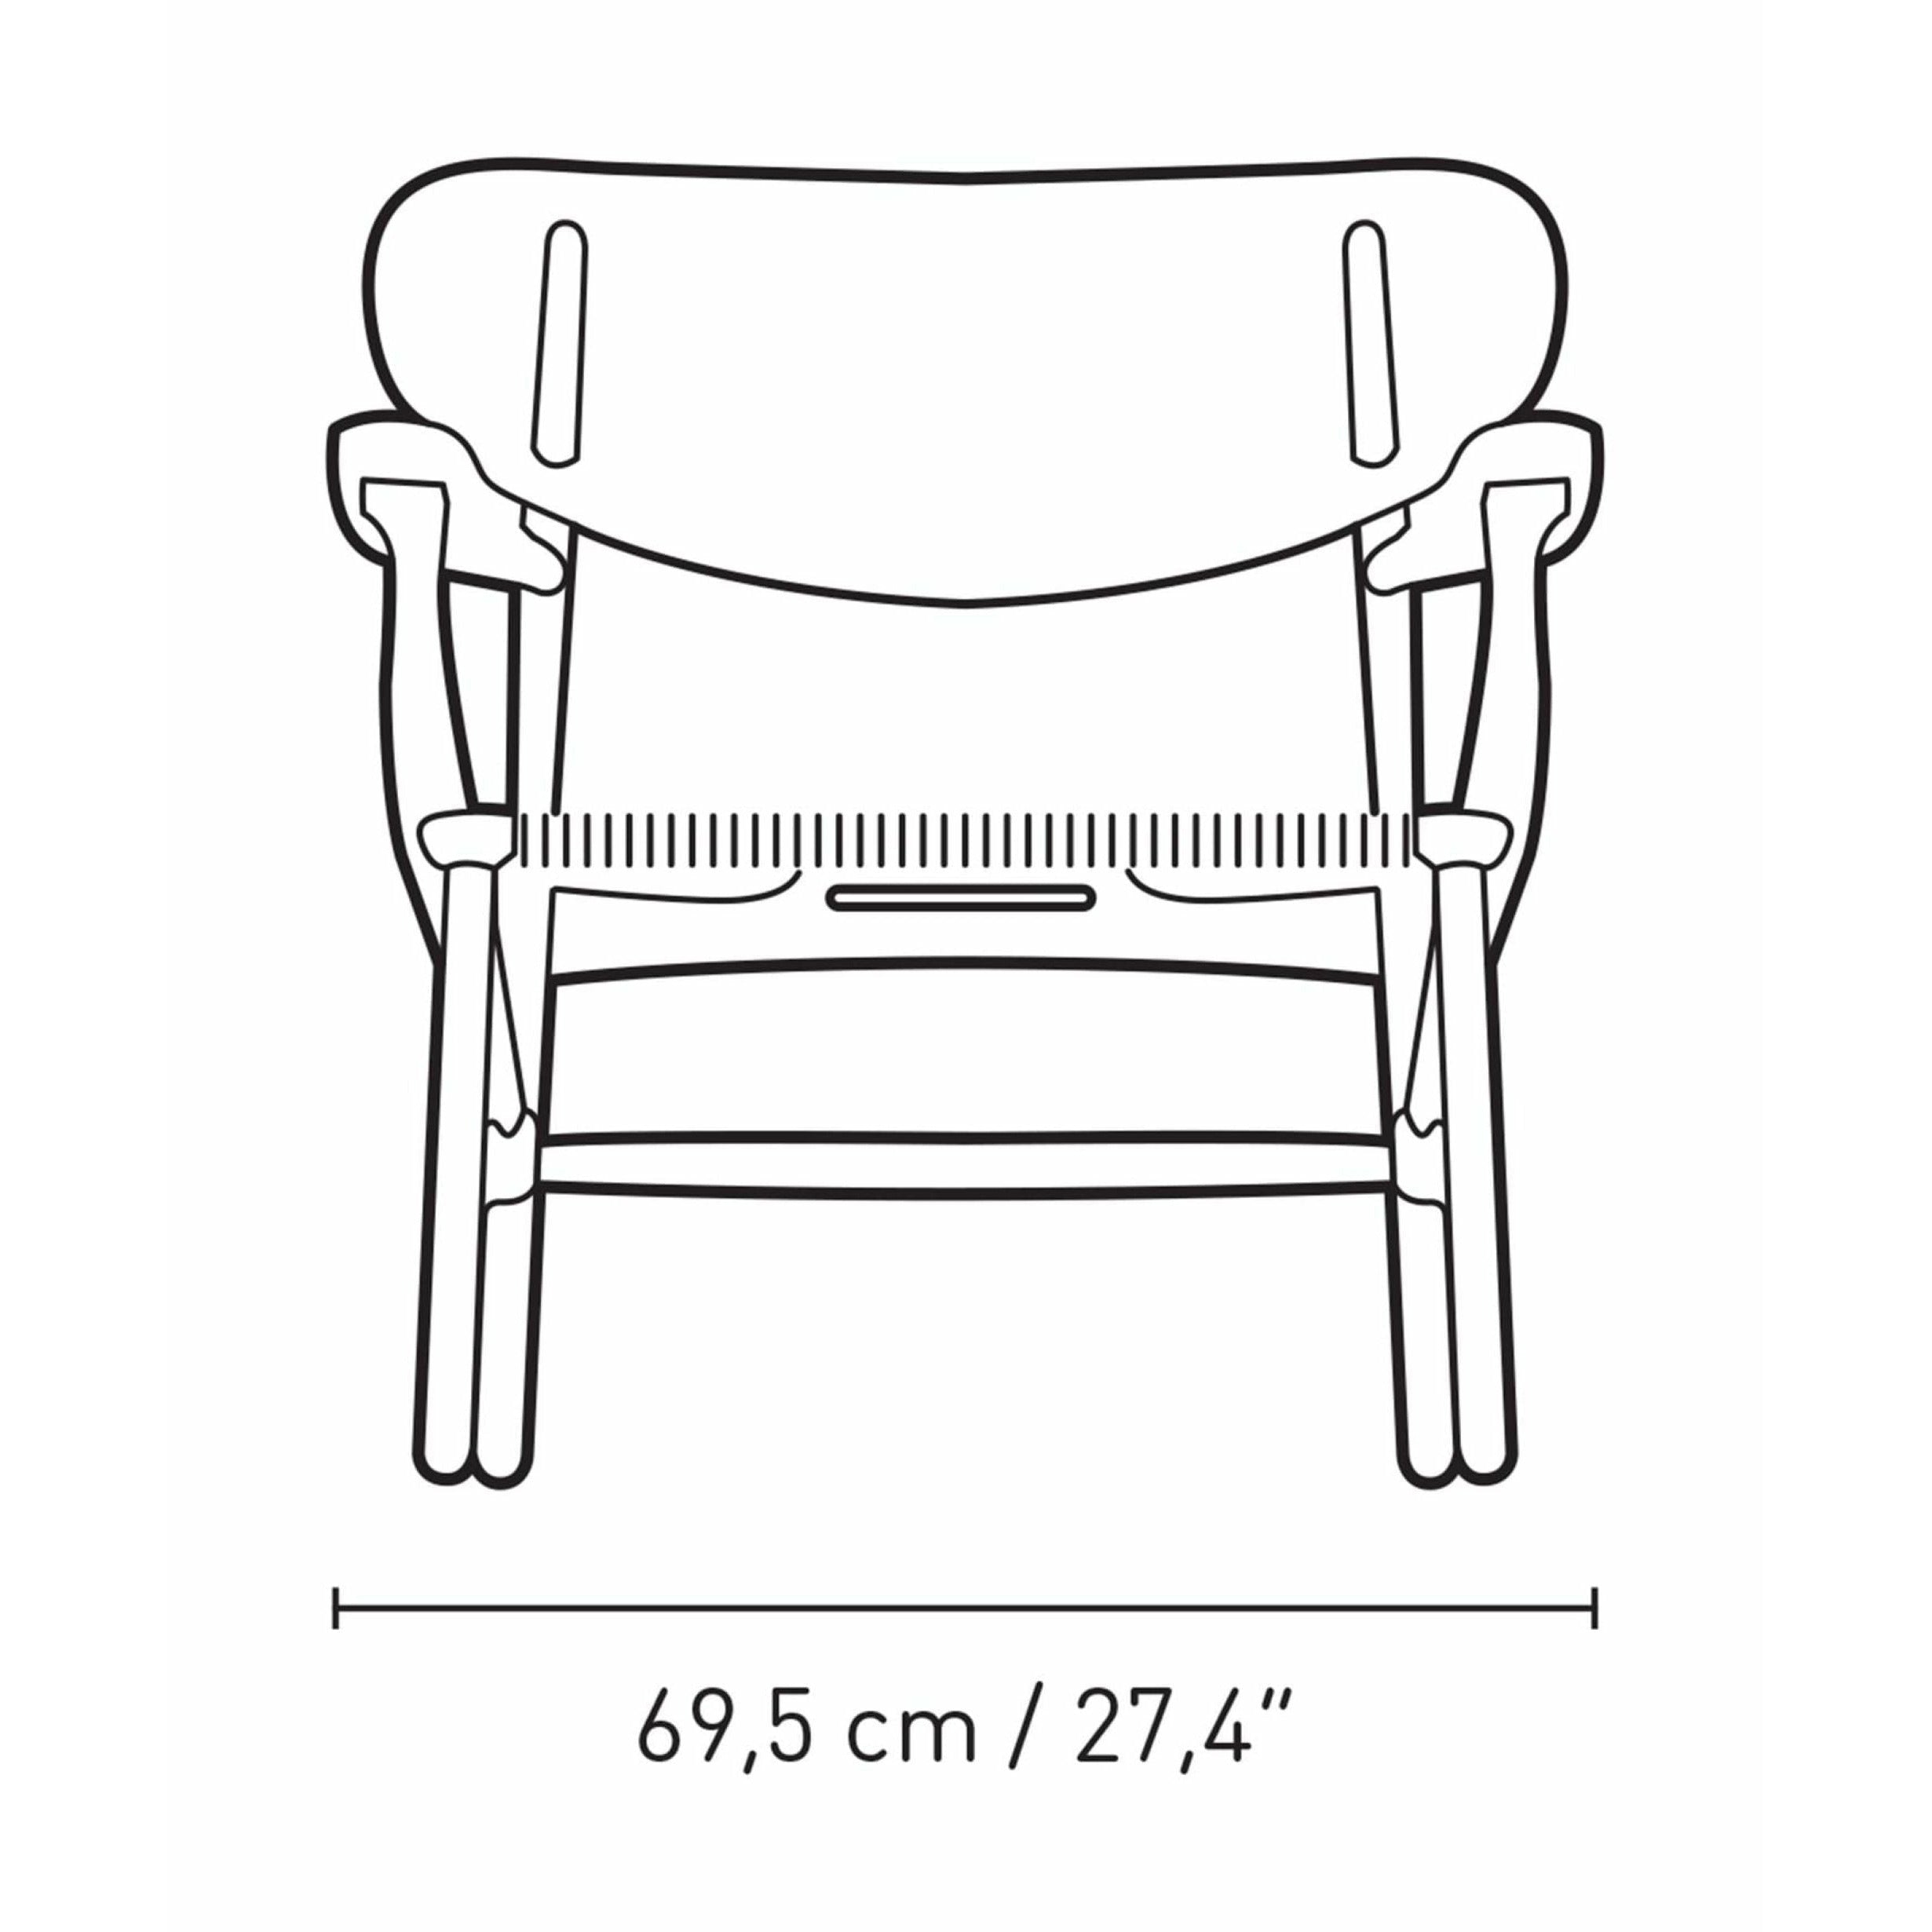 Karla Hansen CH22 Lounge Chair Oak, mořské řasy zelená/přírodní šňůra